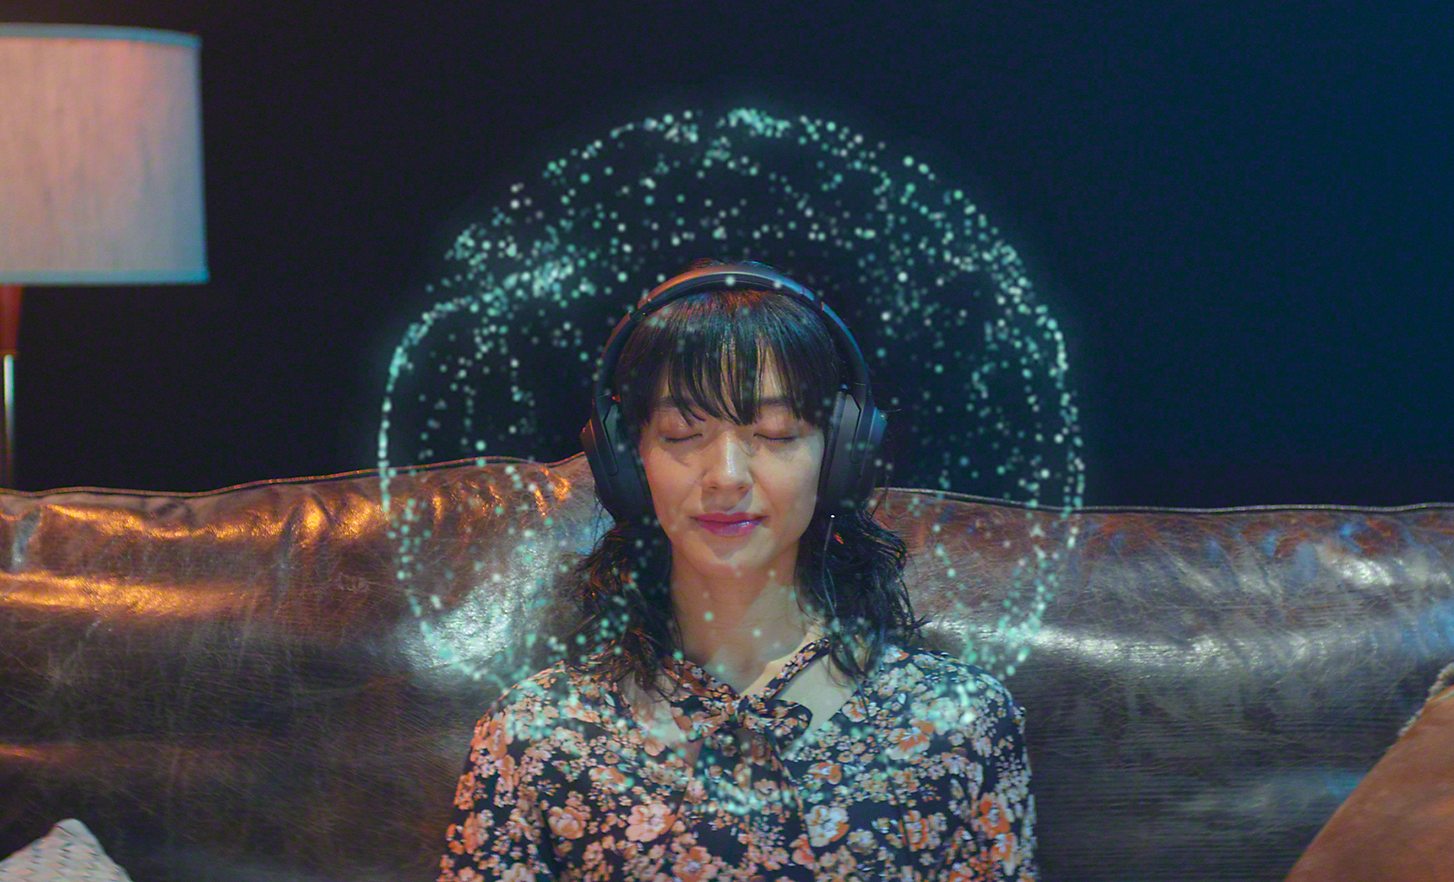 Een vrouw die met haar ogen dicht naar muziek luistert via een koptelefoon − lichtpuntjes rond haar hoofd vertegenwoordigen 360 Reality Audio